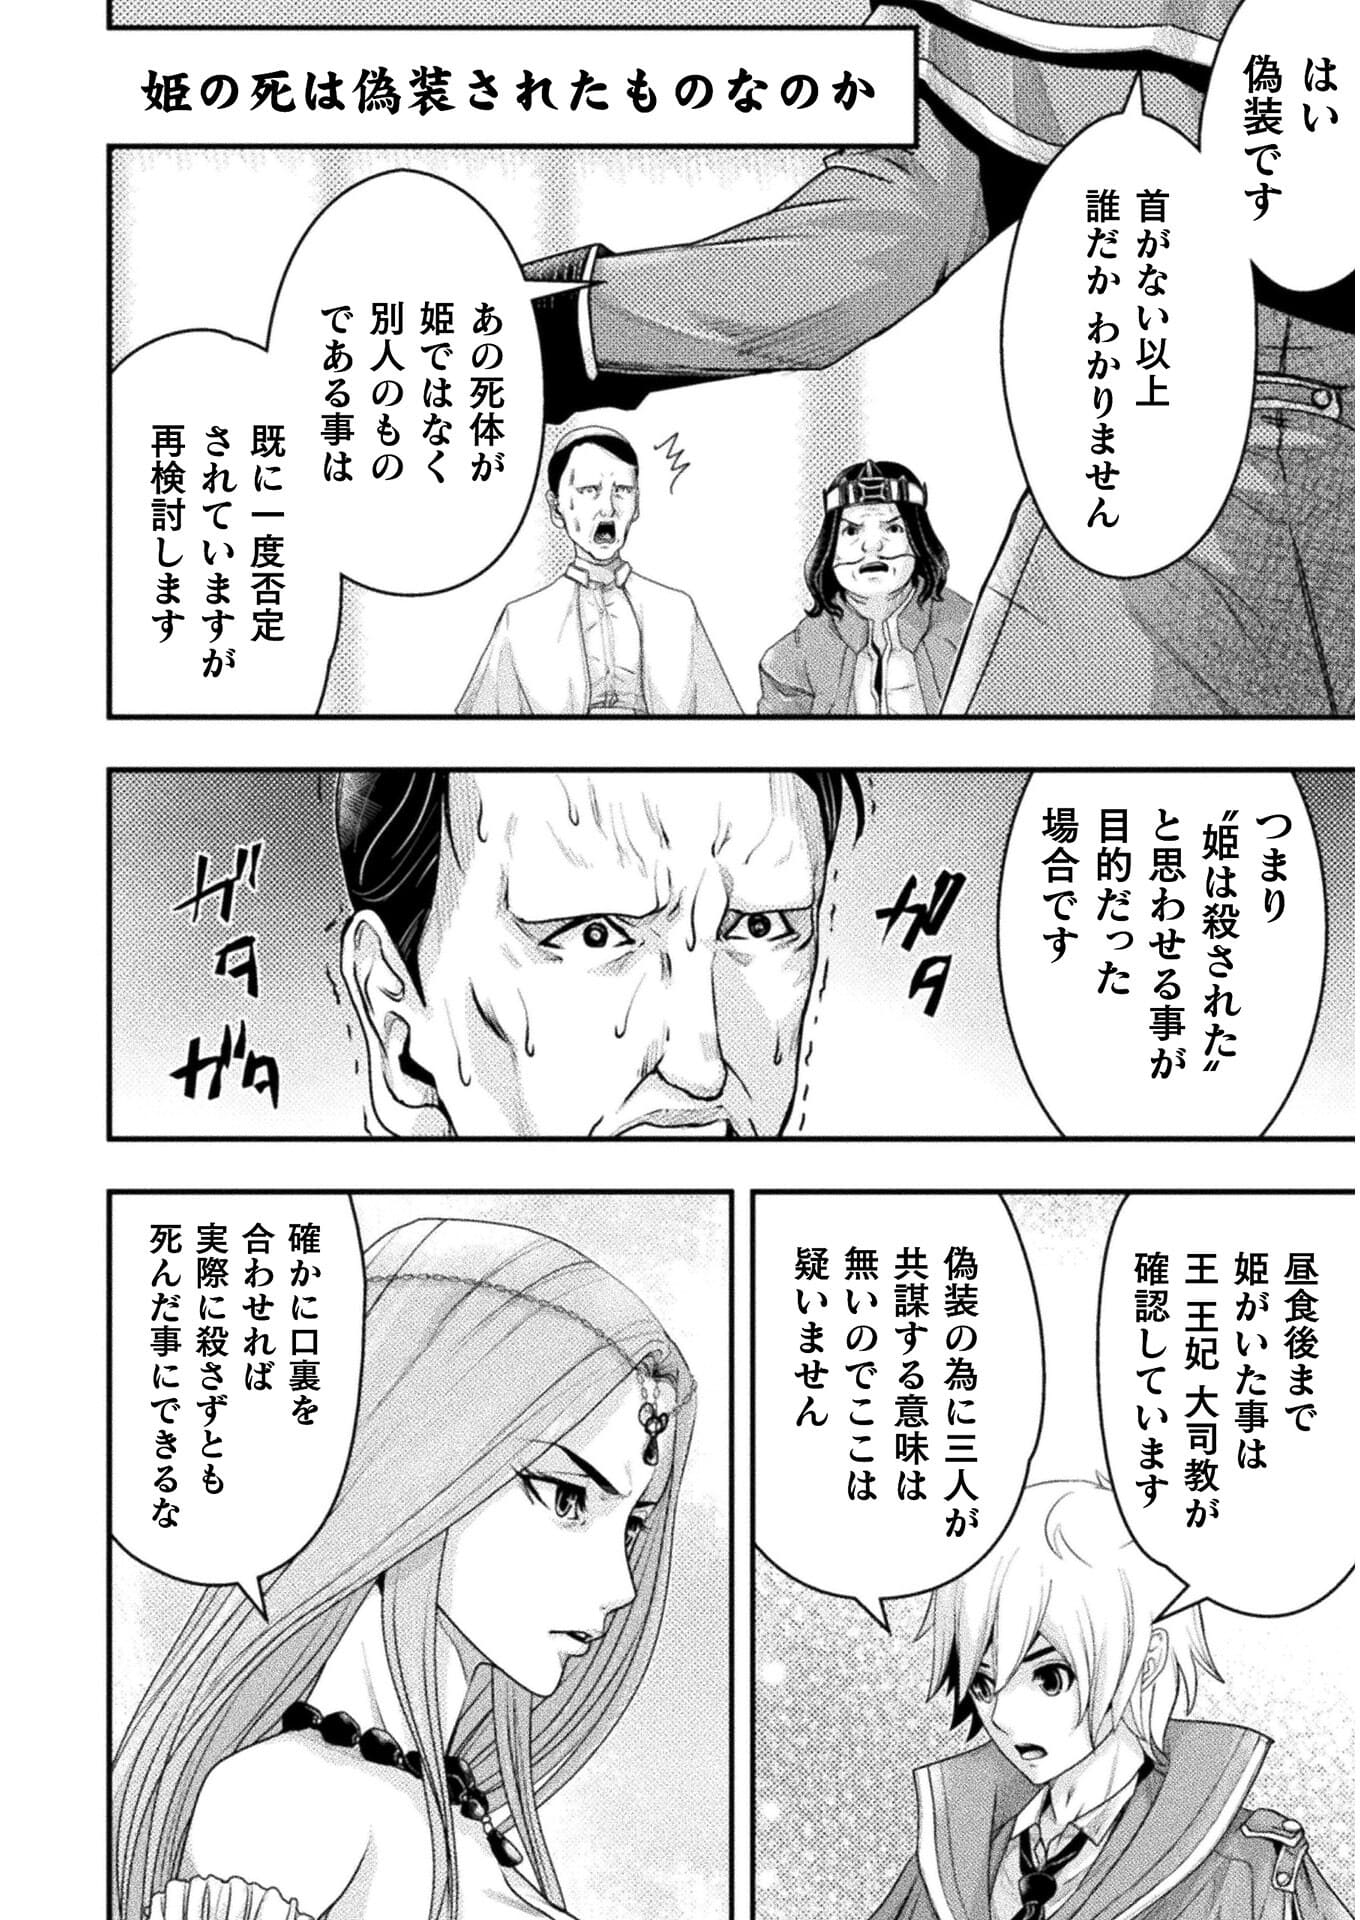 異世界の名探偵; Detectives from another world 第11話 - Page 14